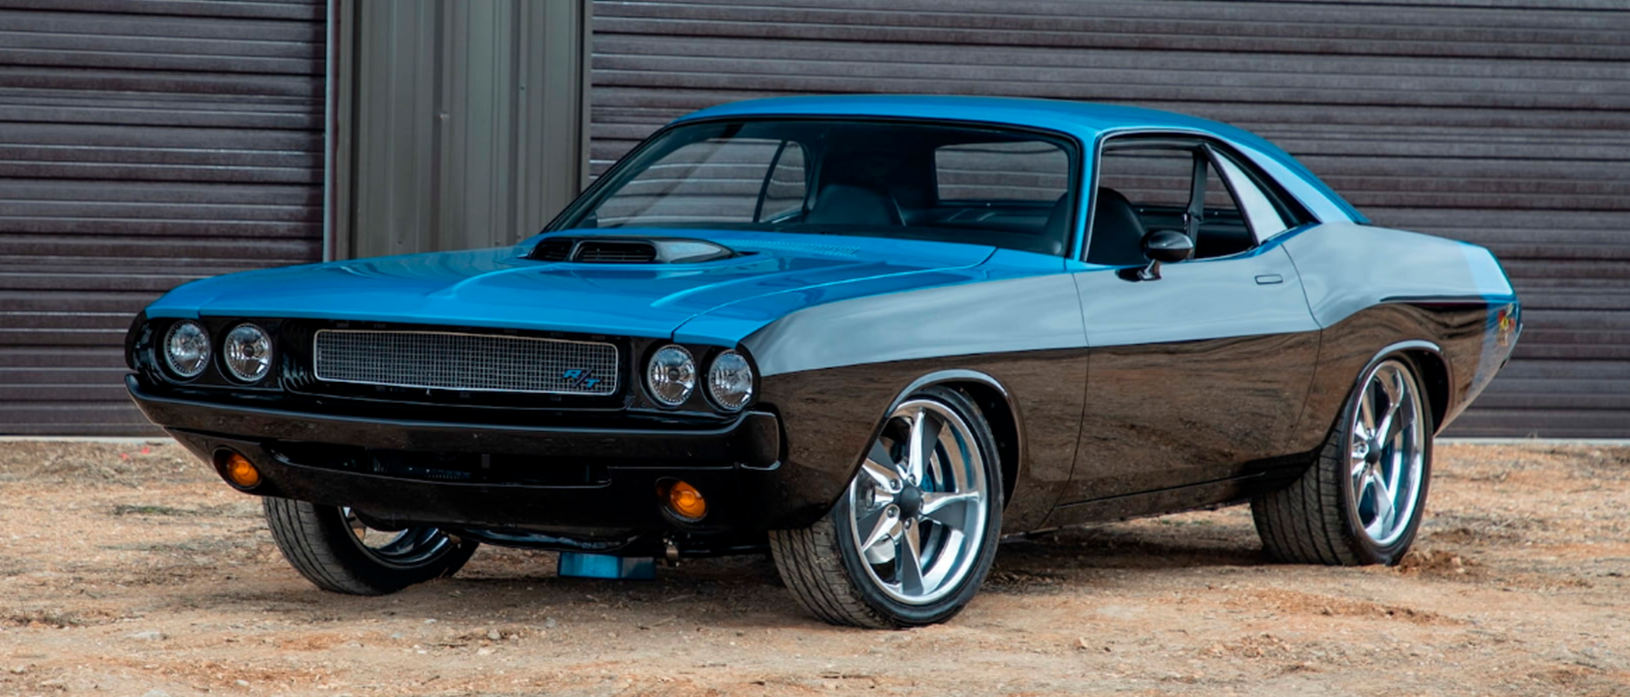 Blue and black 1970 Dodge Challenger Resto Mod